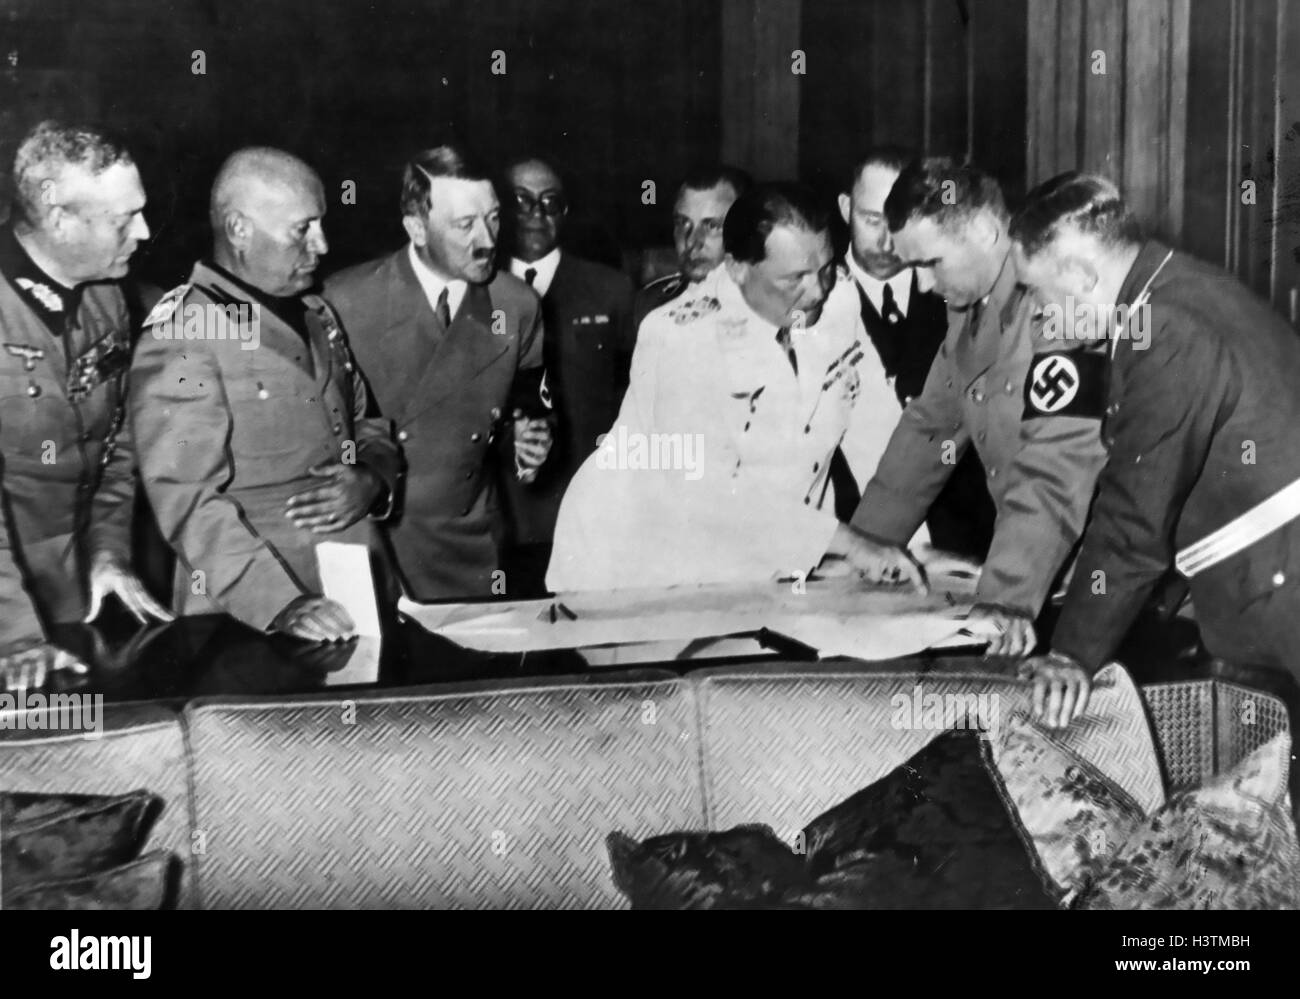 BENITO MUSSOLINI (1883-1945) zweiter von links neben Adolf Hitler. Rudolf Hess (mit Armband) und Herman Goering (in weißen Uniform) finden Sie eine Karte. Ca. 1938. Stockfoto